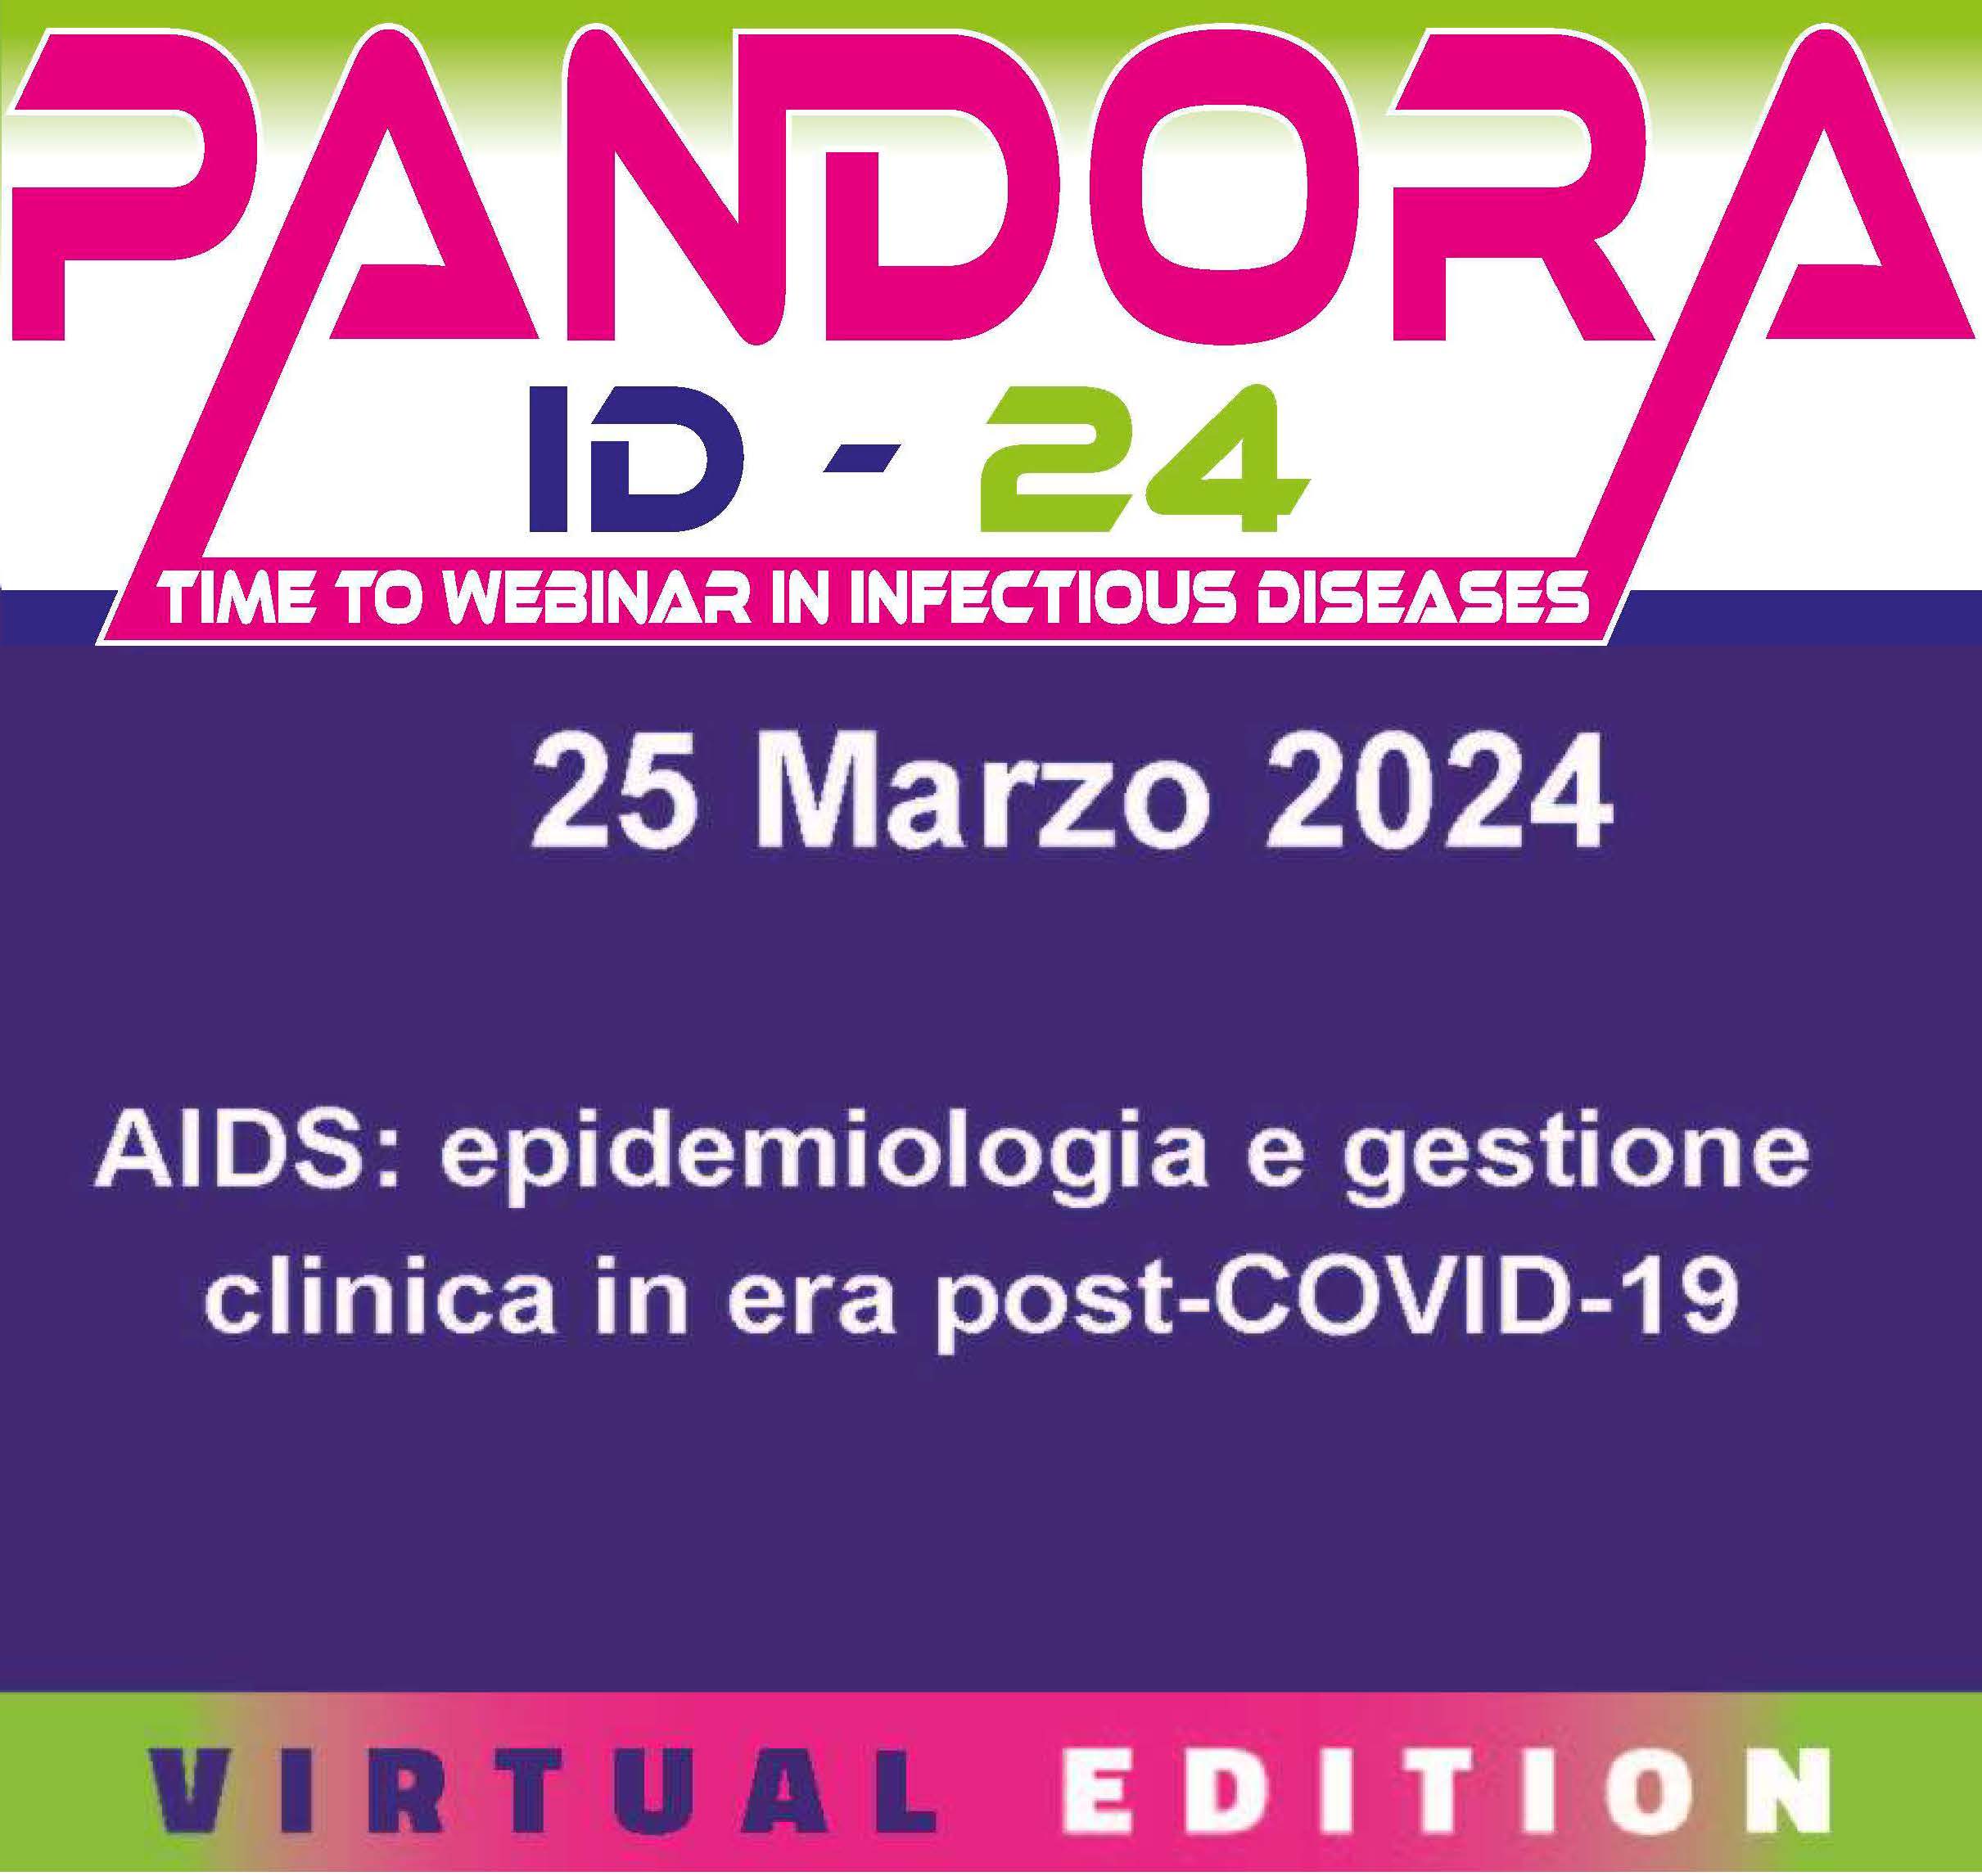 AIDS: EPIDEMIOLOGIA E GESTIONE CLINICA IN EPOCA POST-COVID-19